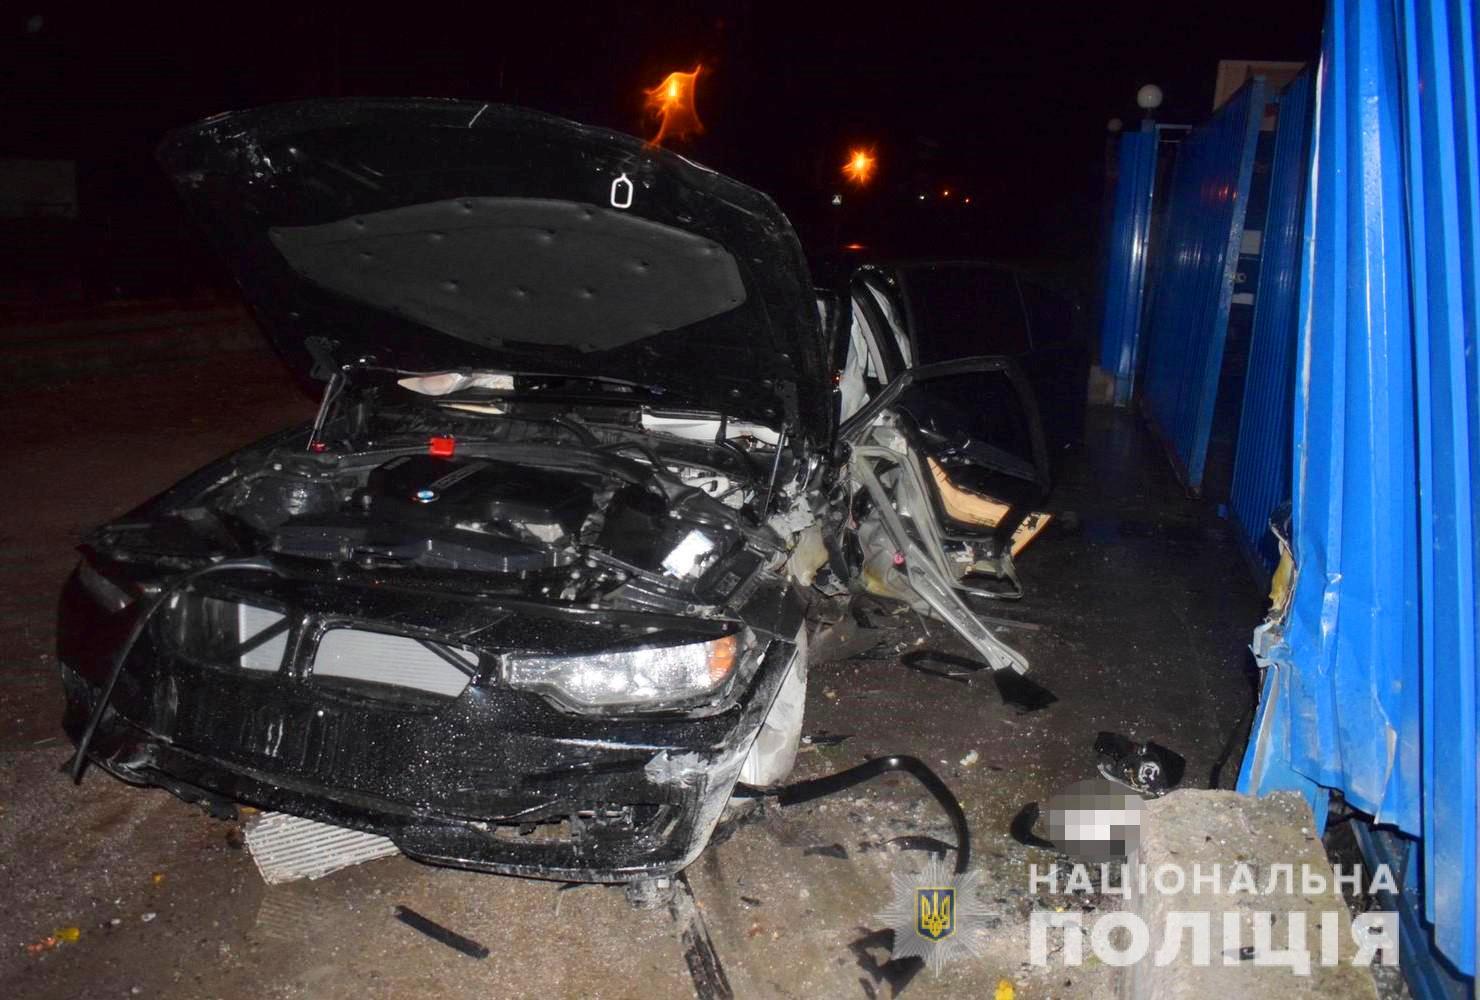 26-річна водійка BMW загинула у ДТП посеред Вінниці (Фото)